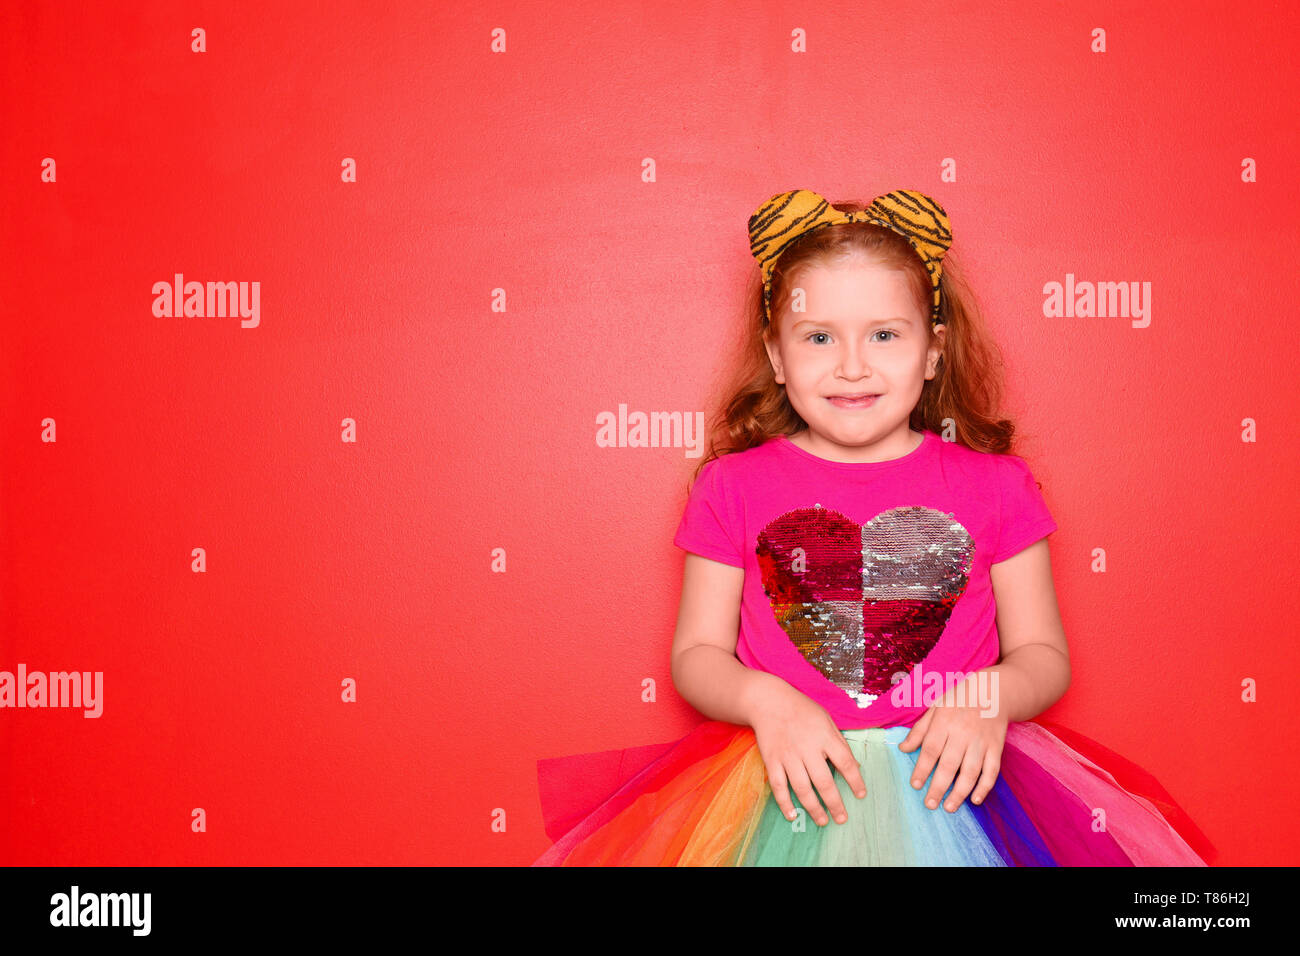 Süße kleine Mädchen mit festliche Kleidung auf farbigen Hintergrund.  Geburtstag Feier Stockfotografie - Alamy